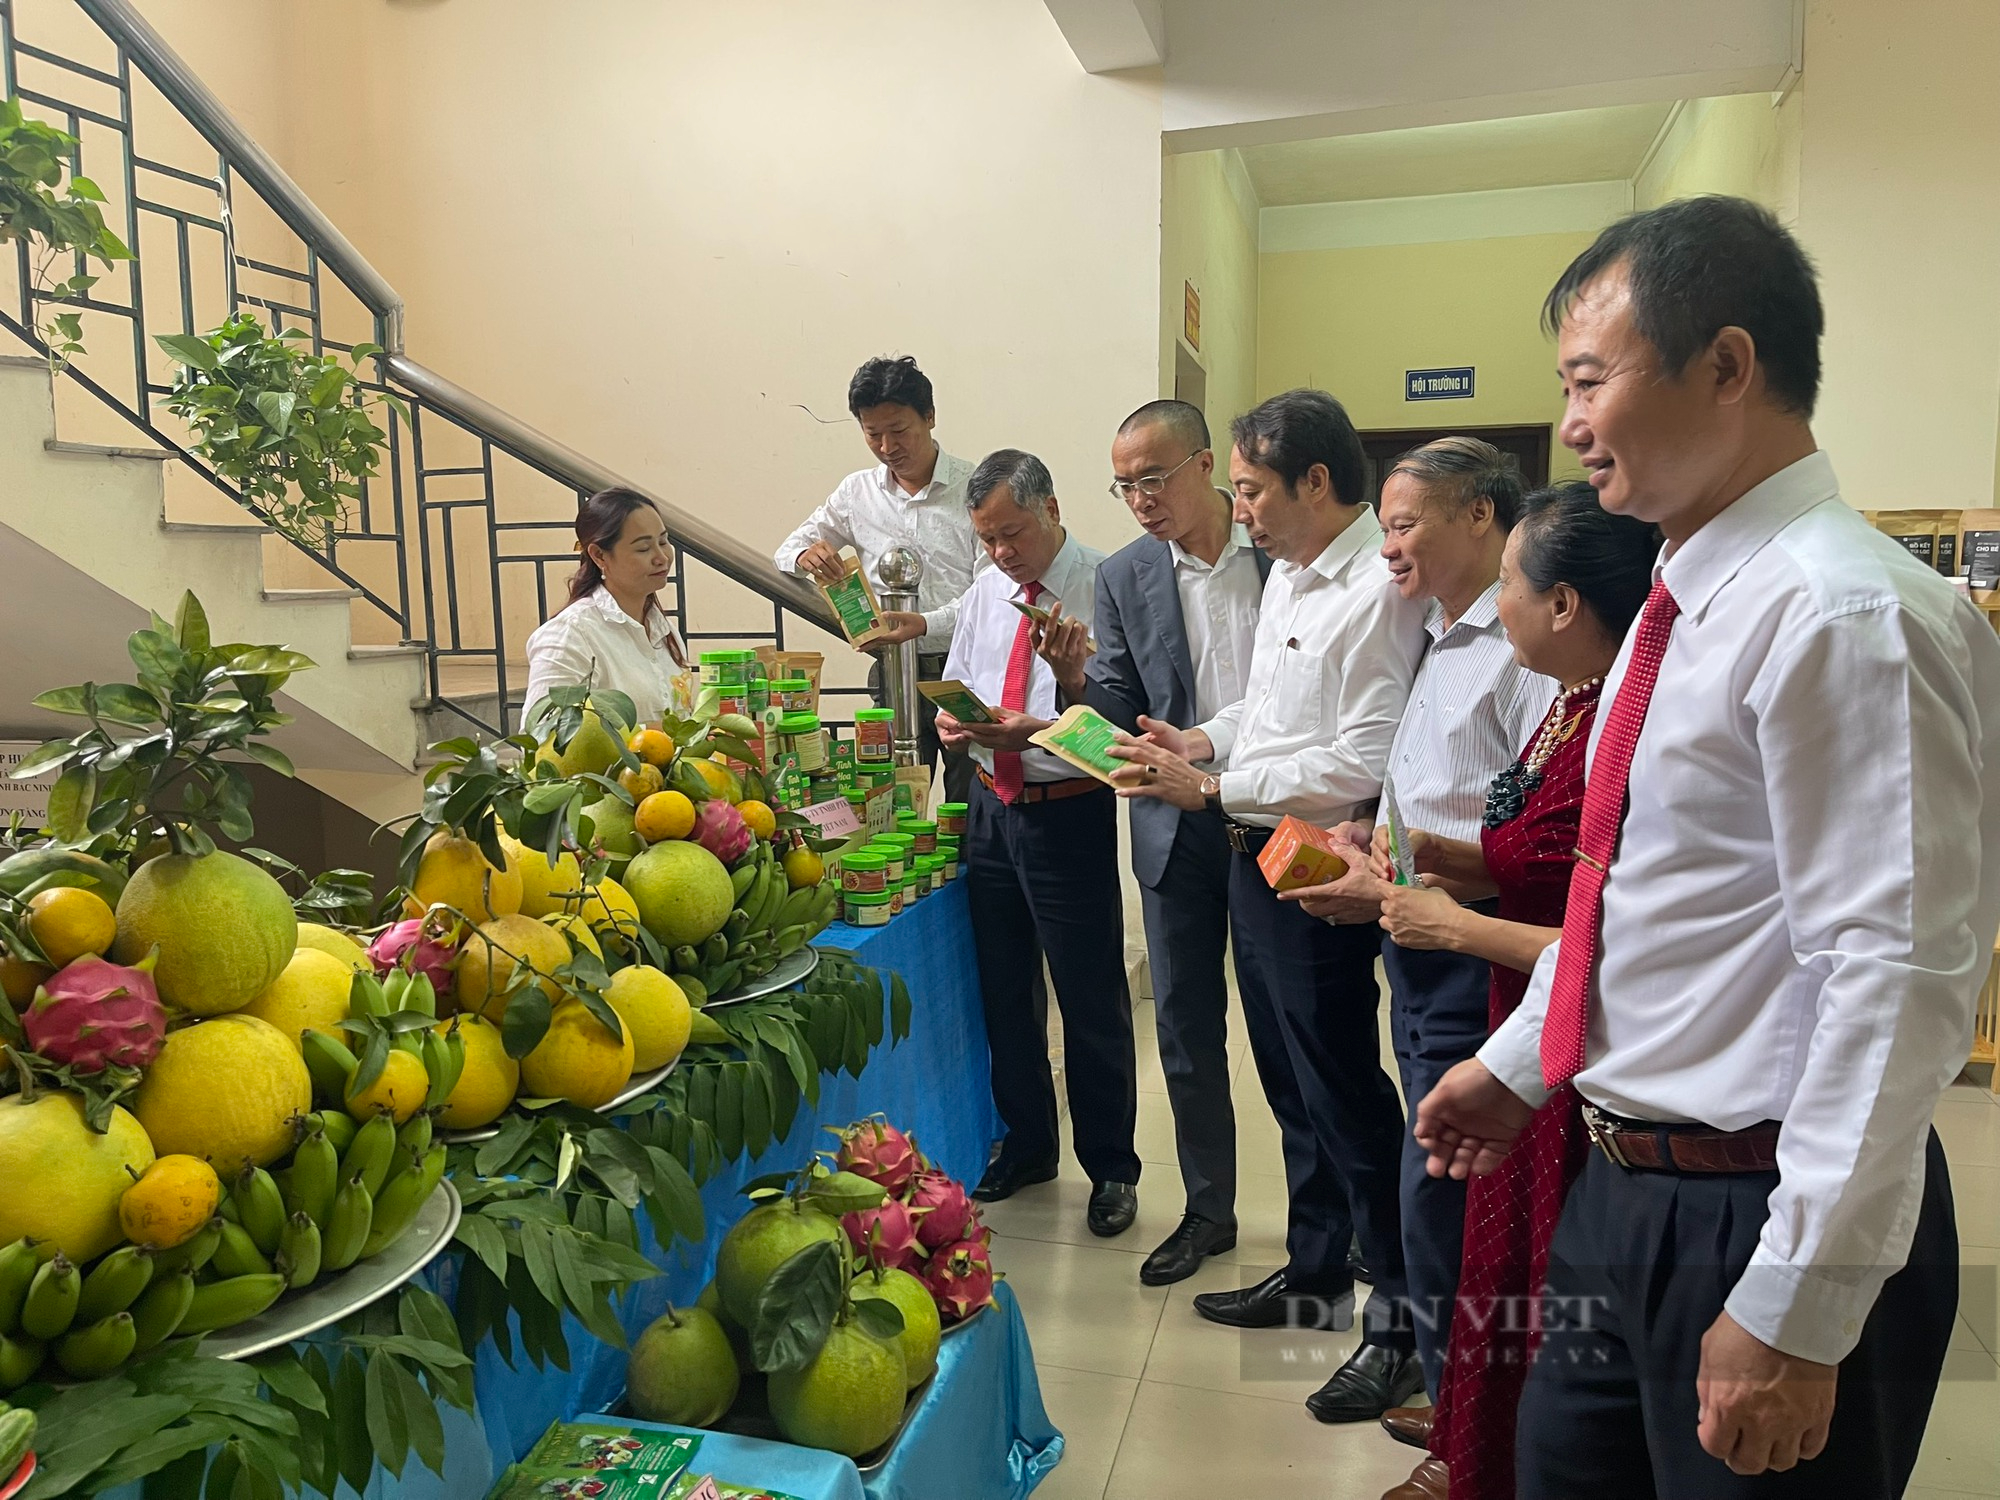 Bắc Ninh hỗ trợ thúc đẩy ứng dụng công nghệ số trong lĩnh vực nông nghiệp - Ảnh 3.